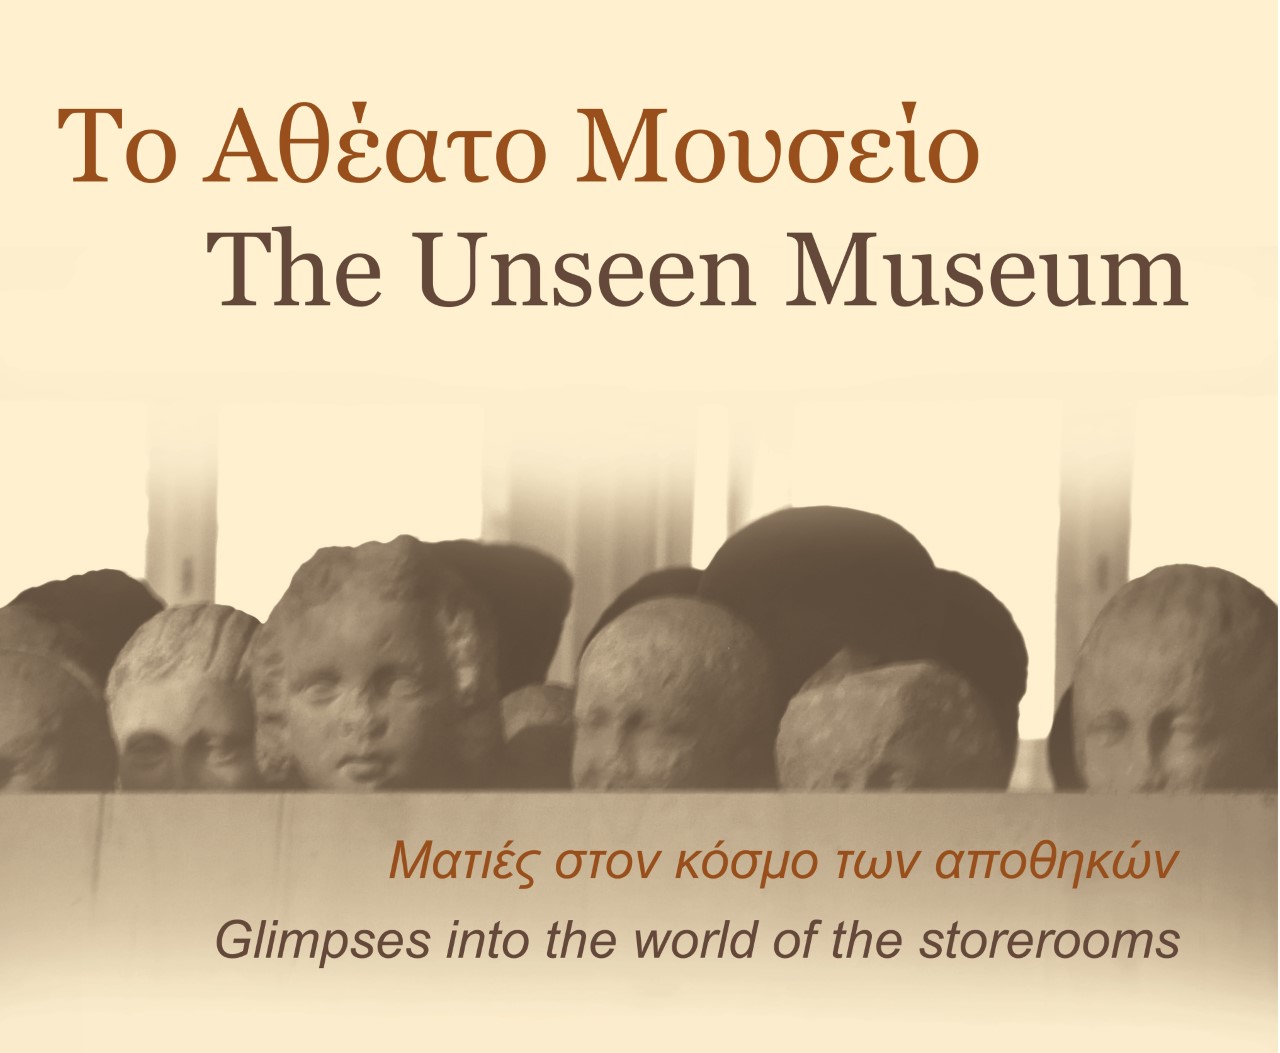 Μοναδικά ευρήματα του Ερρίκου και της Σοφίας Σλήμαν από την Τροία παρουσιάζονται στο Εθνικό Αρχαιολογικό Μουσείο.